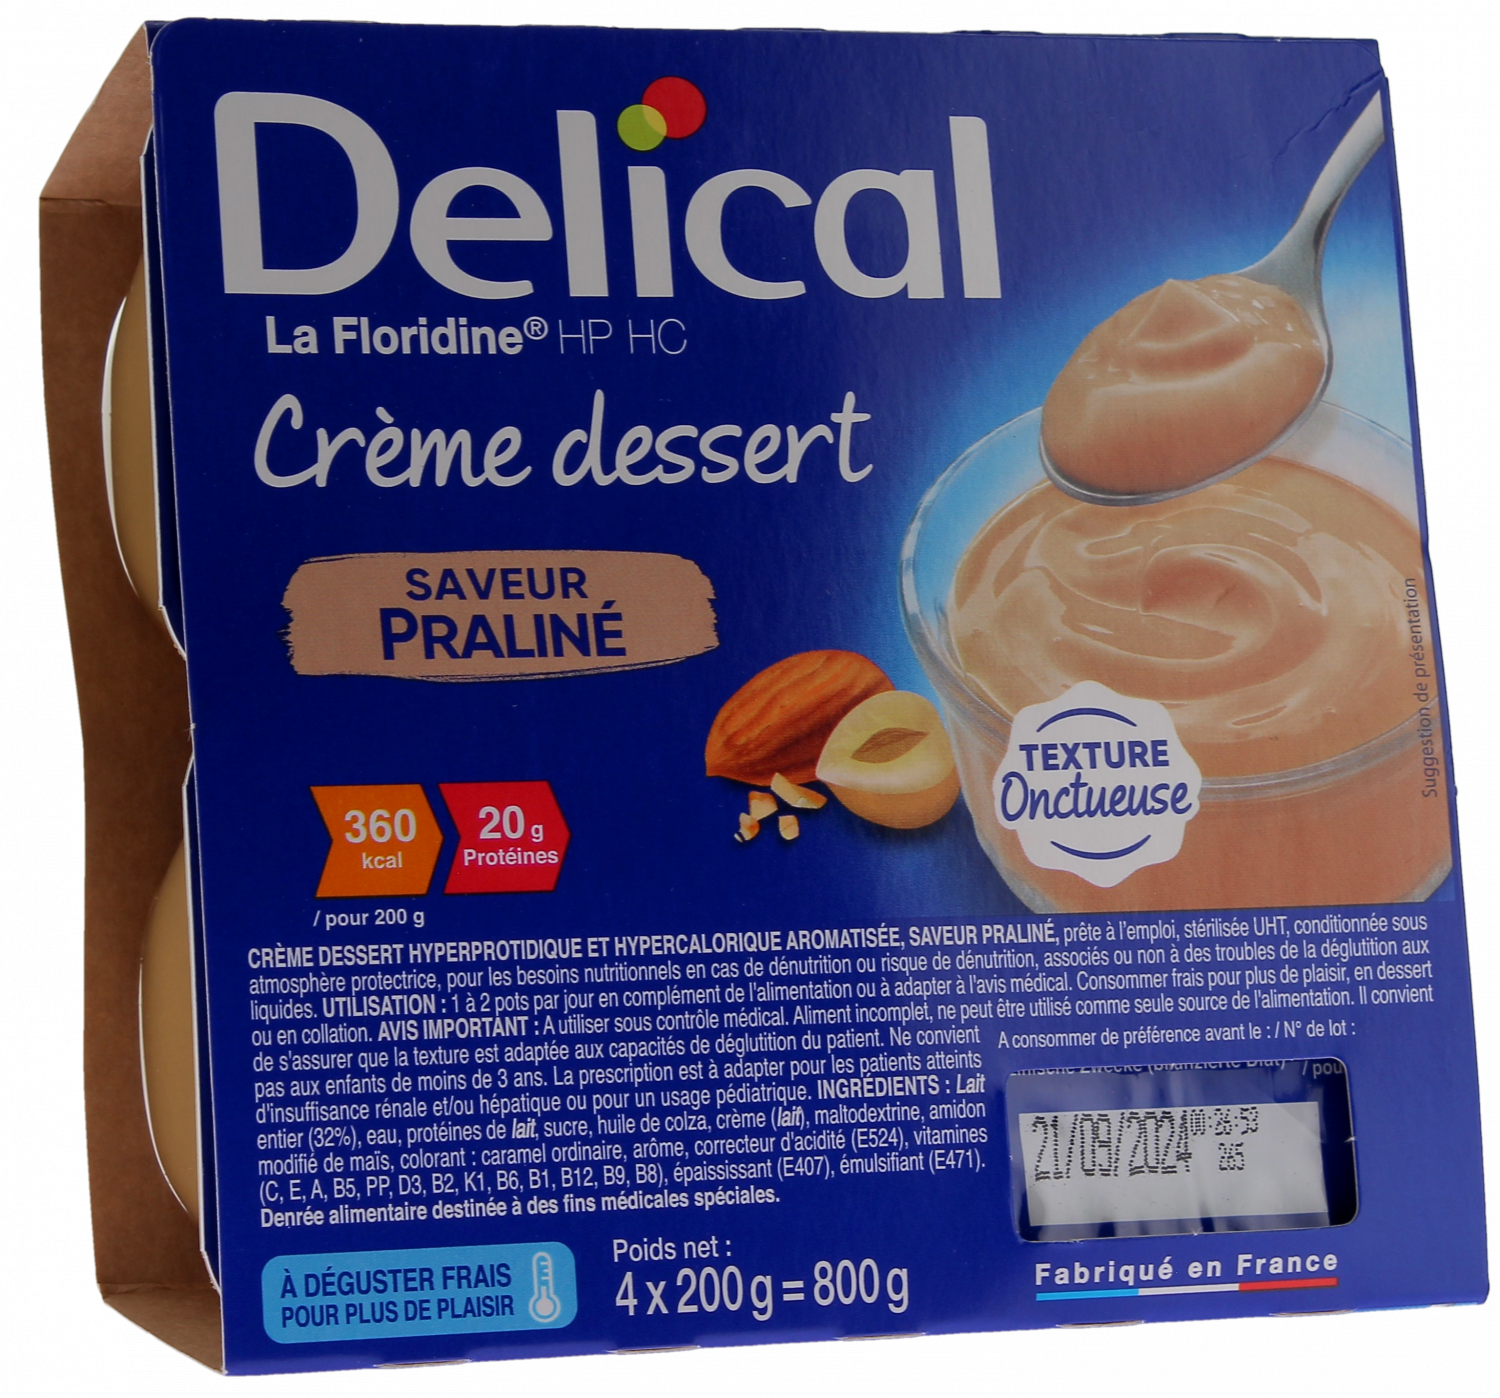 Delical Crème dessert HP/HC La Floridine saveur praliné - 4 pots de 200g